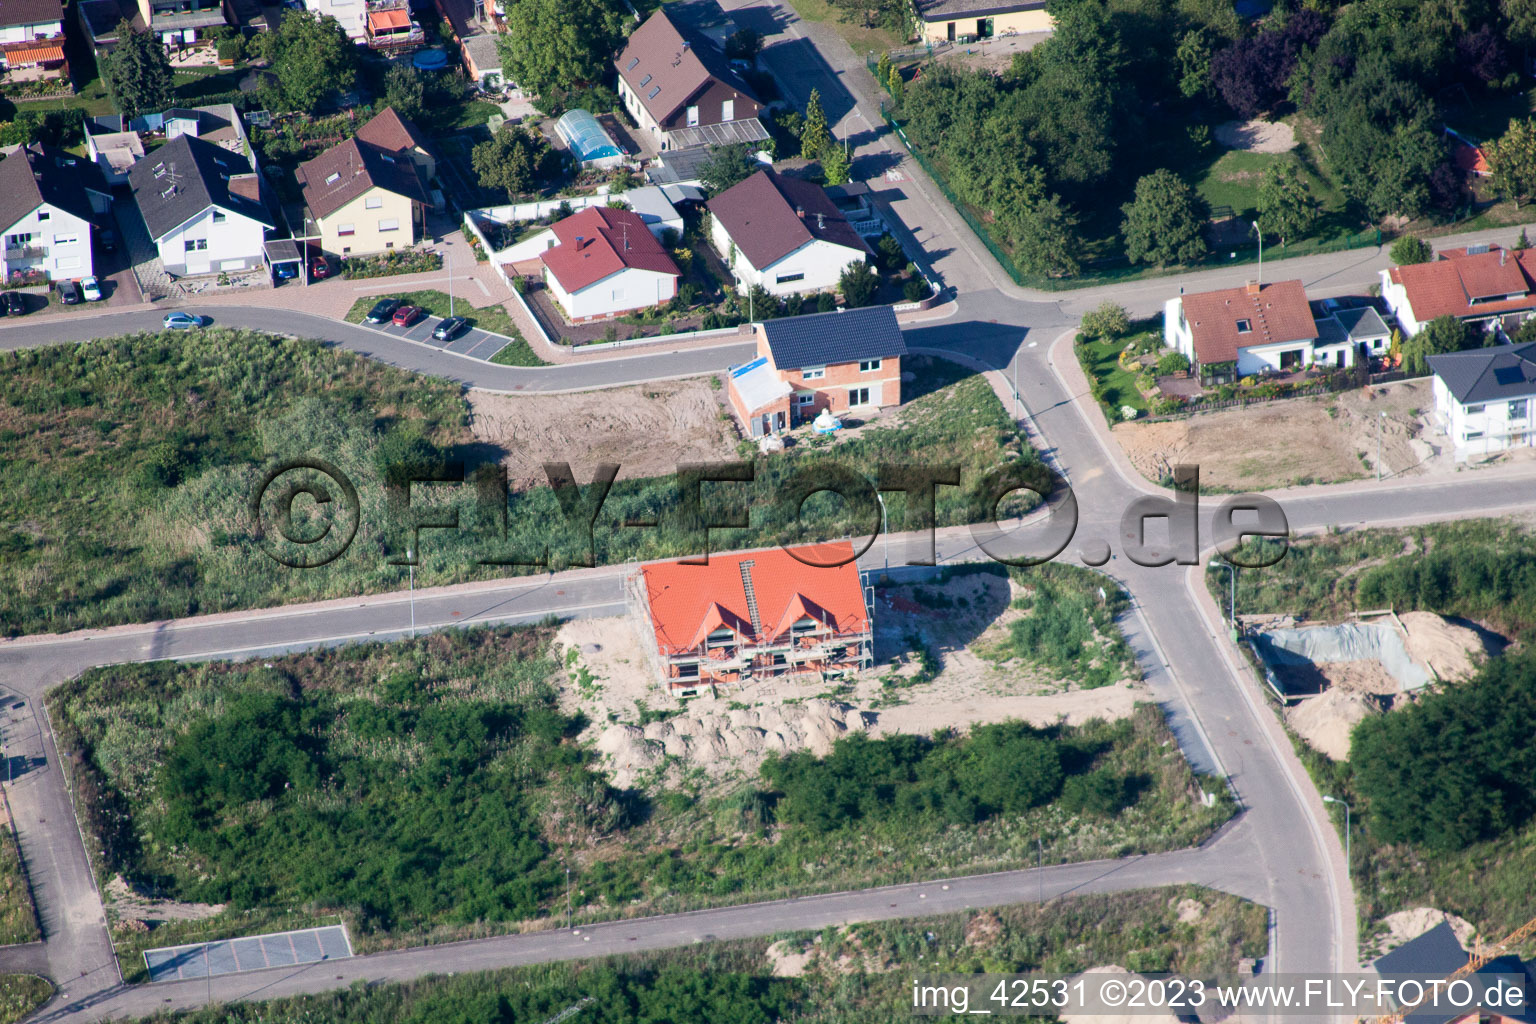 Nouvelle zone de développement ouest à Jockgrim dans le département Rhénanie-Palatinat, Allemagne vu d'un drone